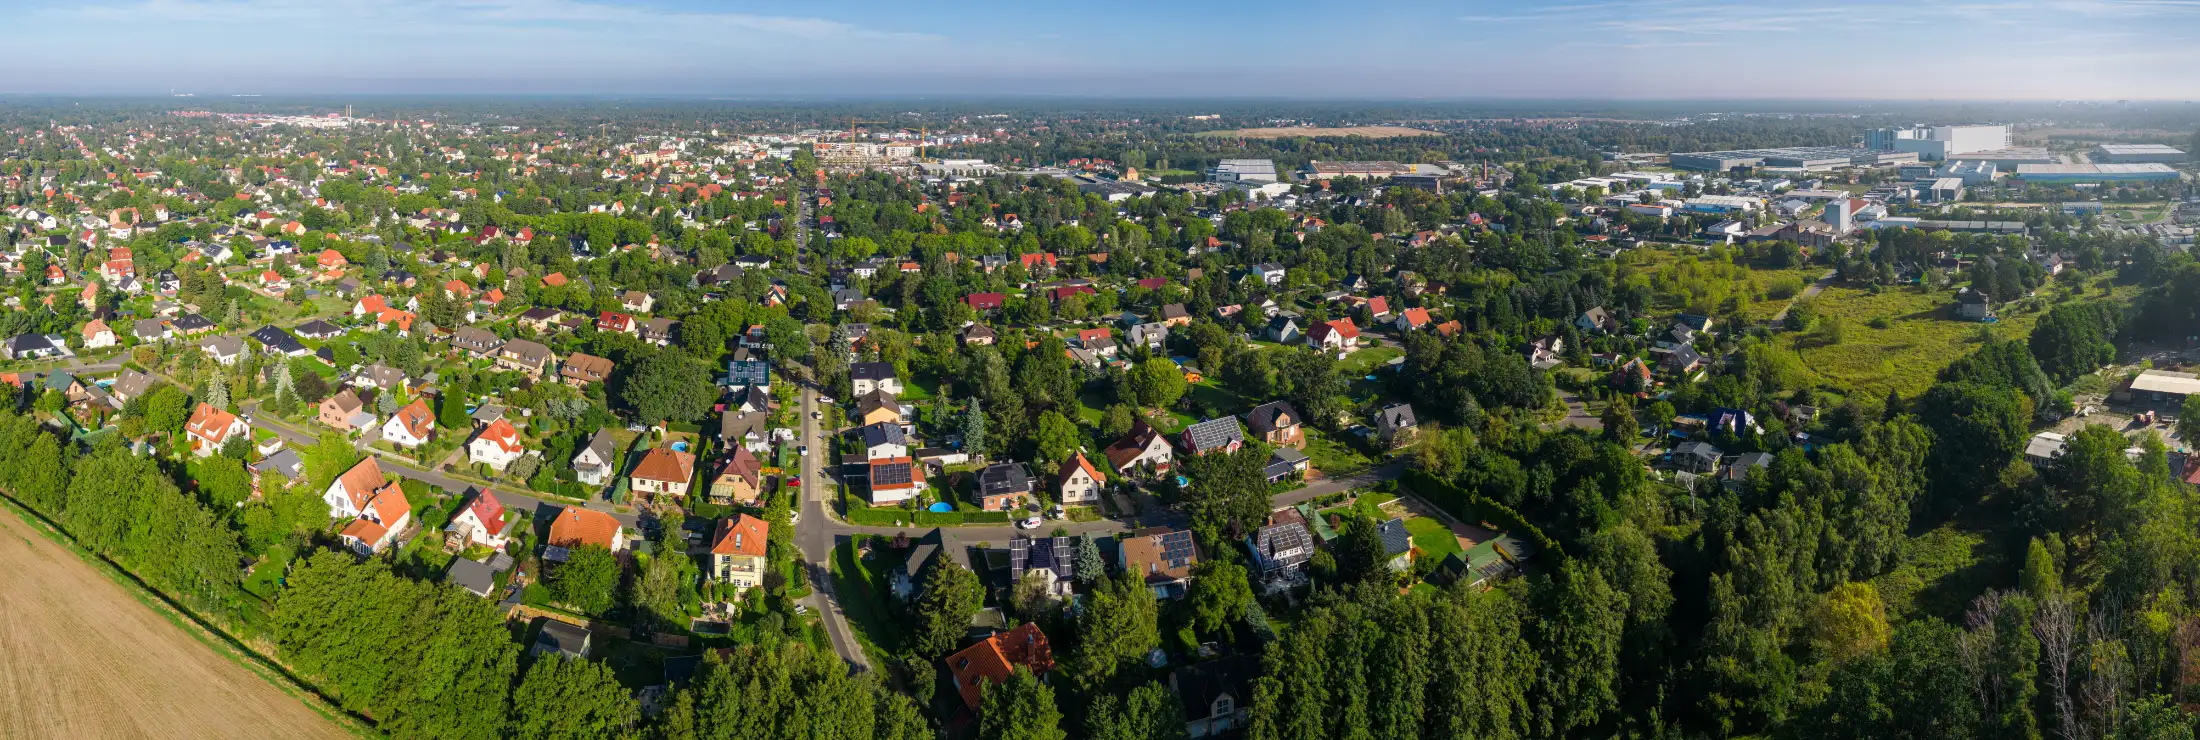 Luftaufnahme – Panorama von Falkensee (aufgenommen am Südrand, Blickrichtung Norden): vorne die Immobilien an der Dallgower Str. und Oskar-von-Miller Str., dahinter die Innenstadt von Falkensee, rechts Seegefeld und Gewerbegebiet-Süd, dahinter Falkenhagen